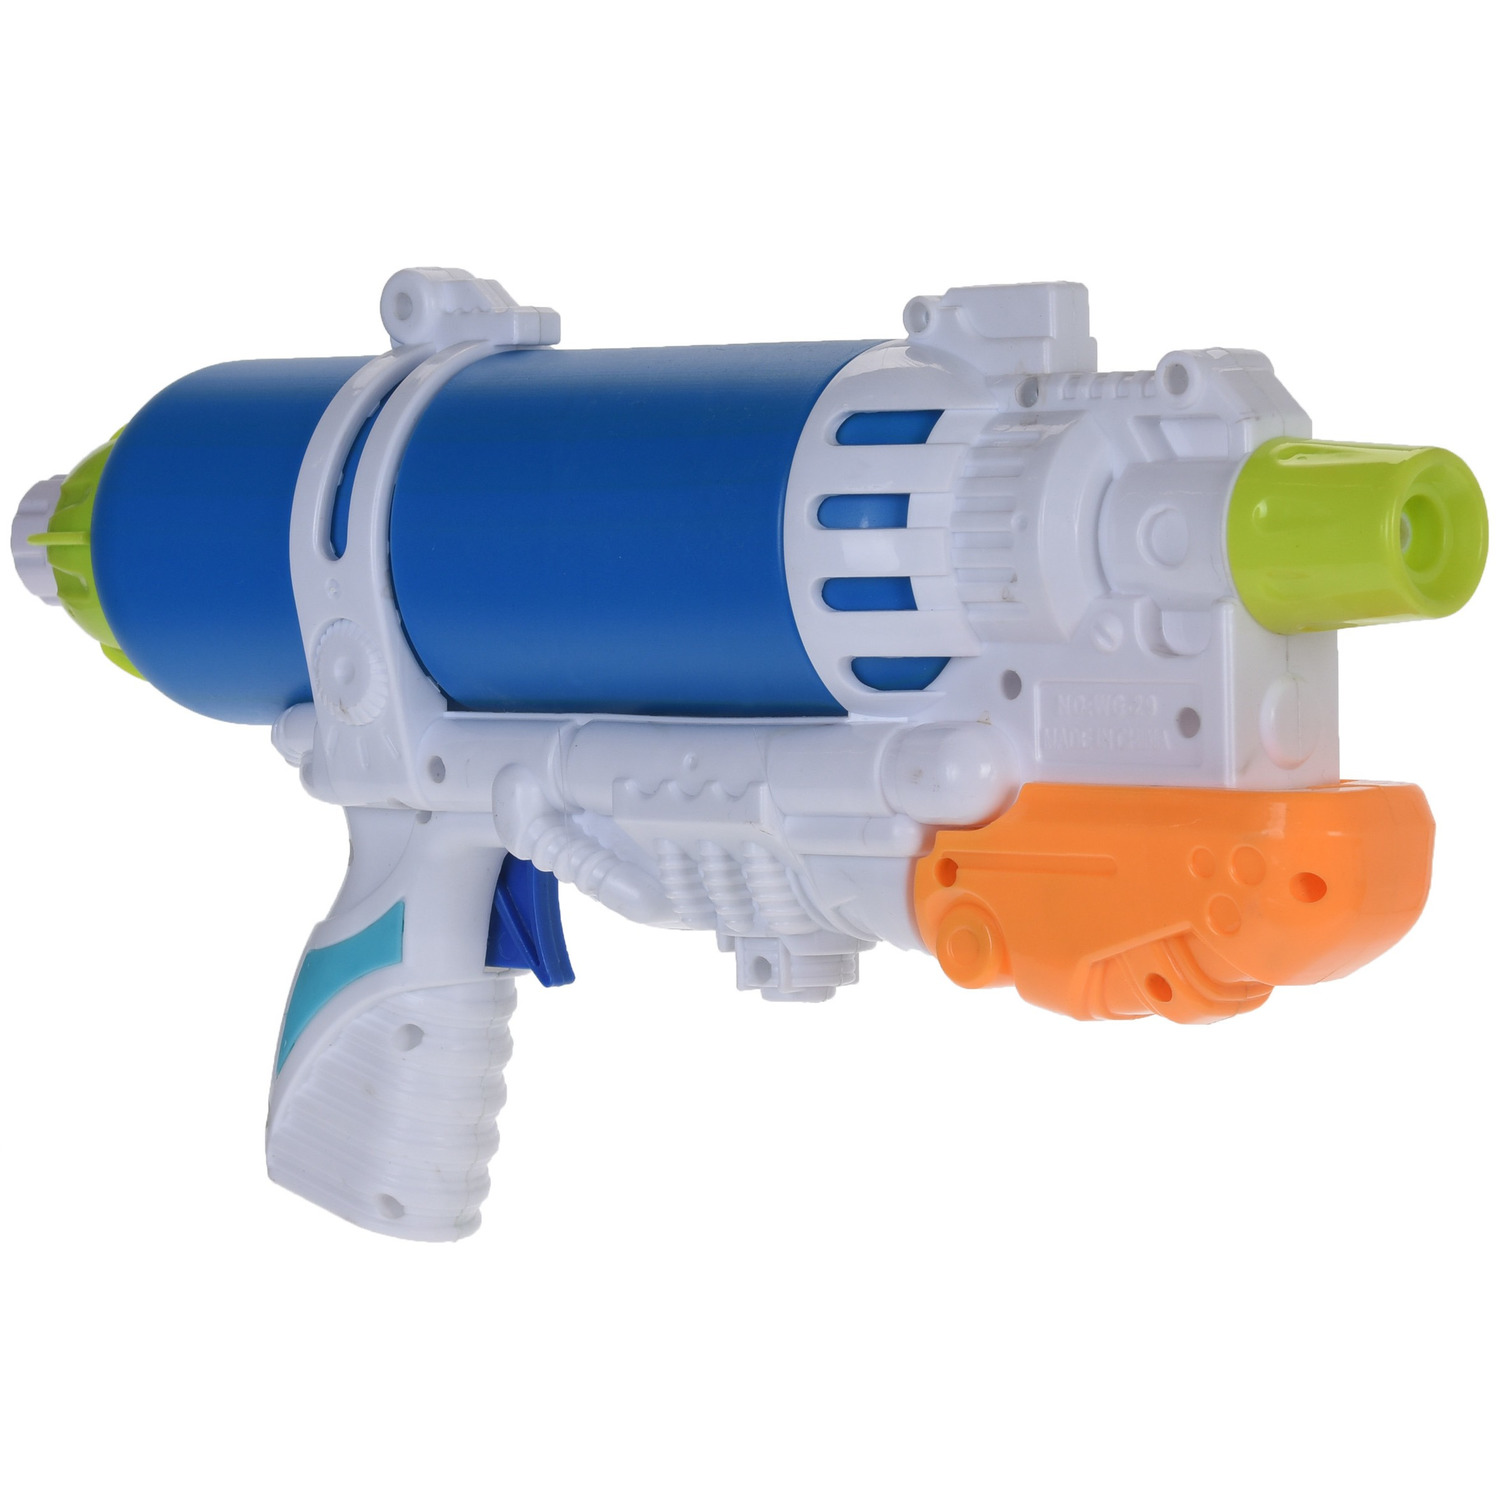 1x Waterpistolen/waterpistool blauw/wit van 34 cm kinderspeelgoed